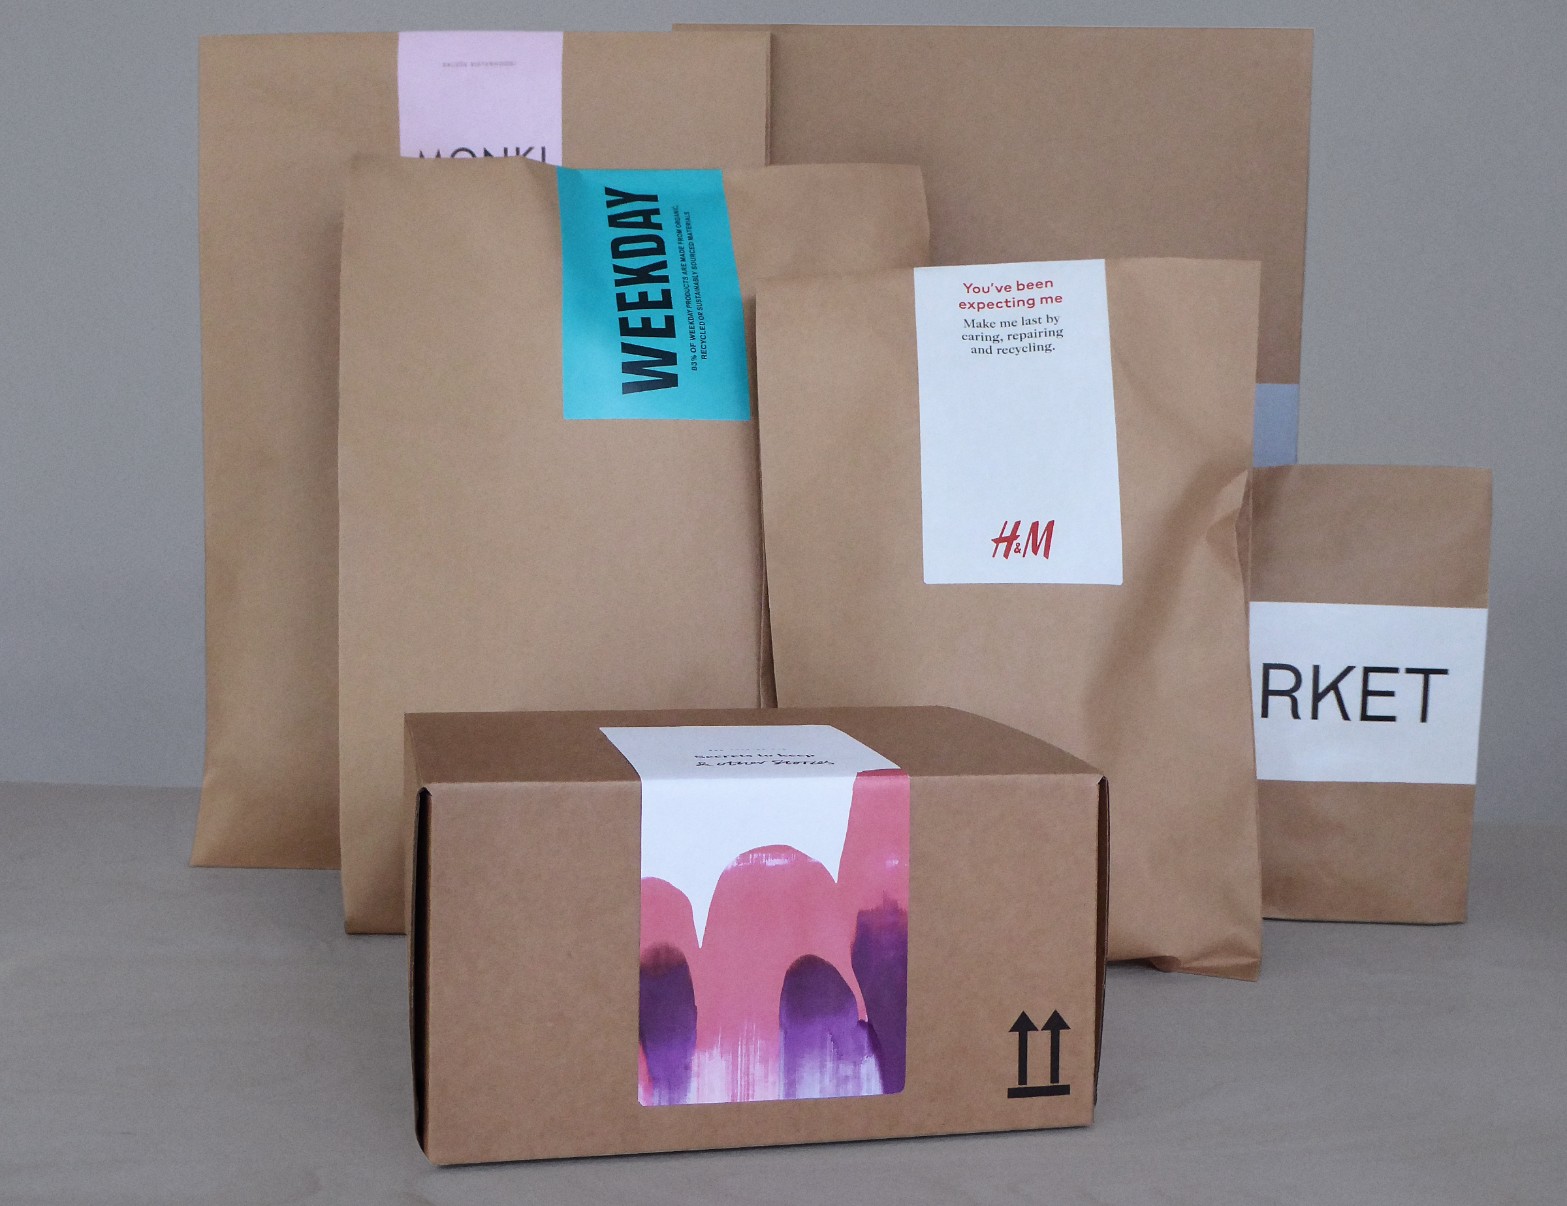 瑞典快时尚巨头 H&M 旗下多个品牌推广可持续纸质包装